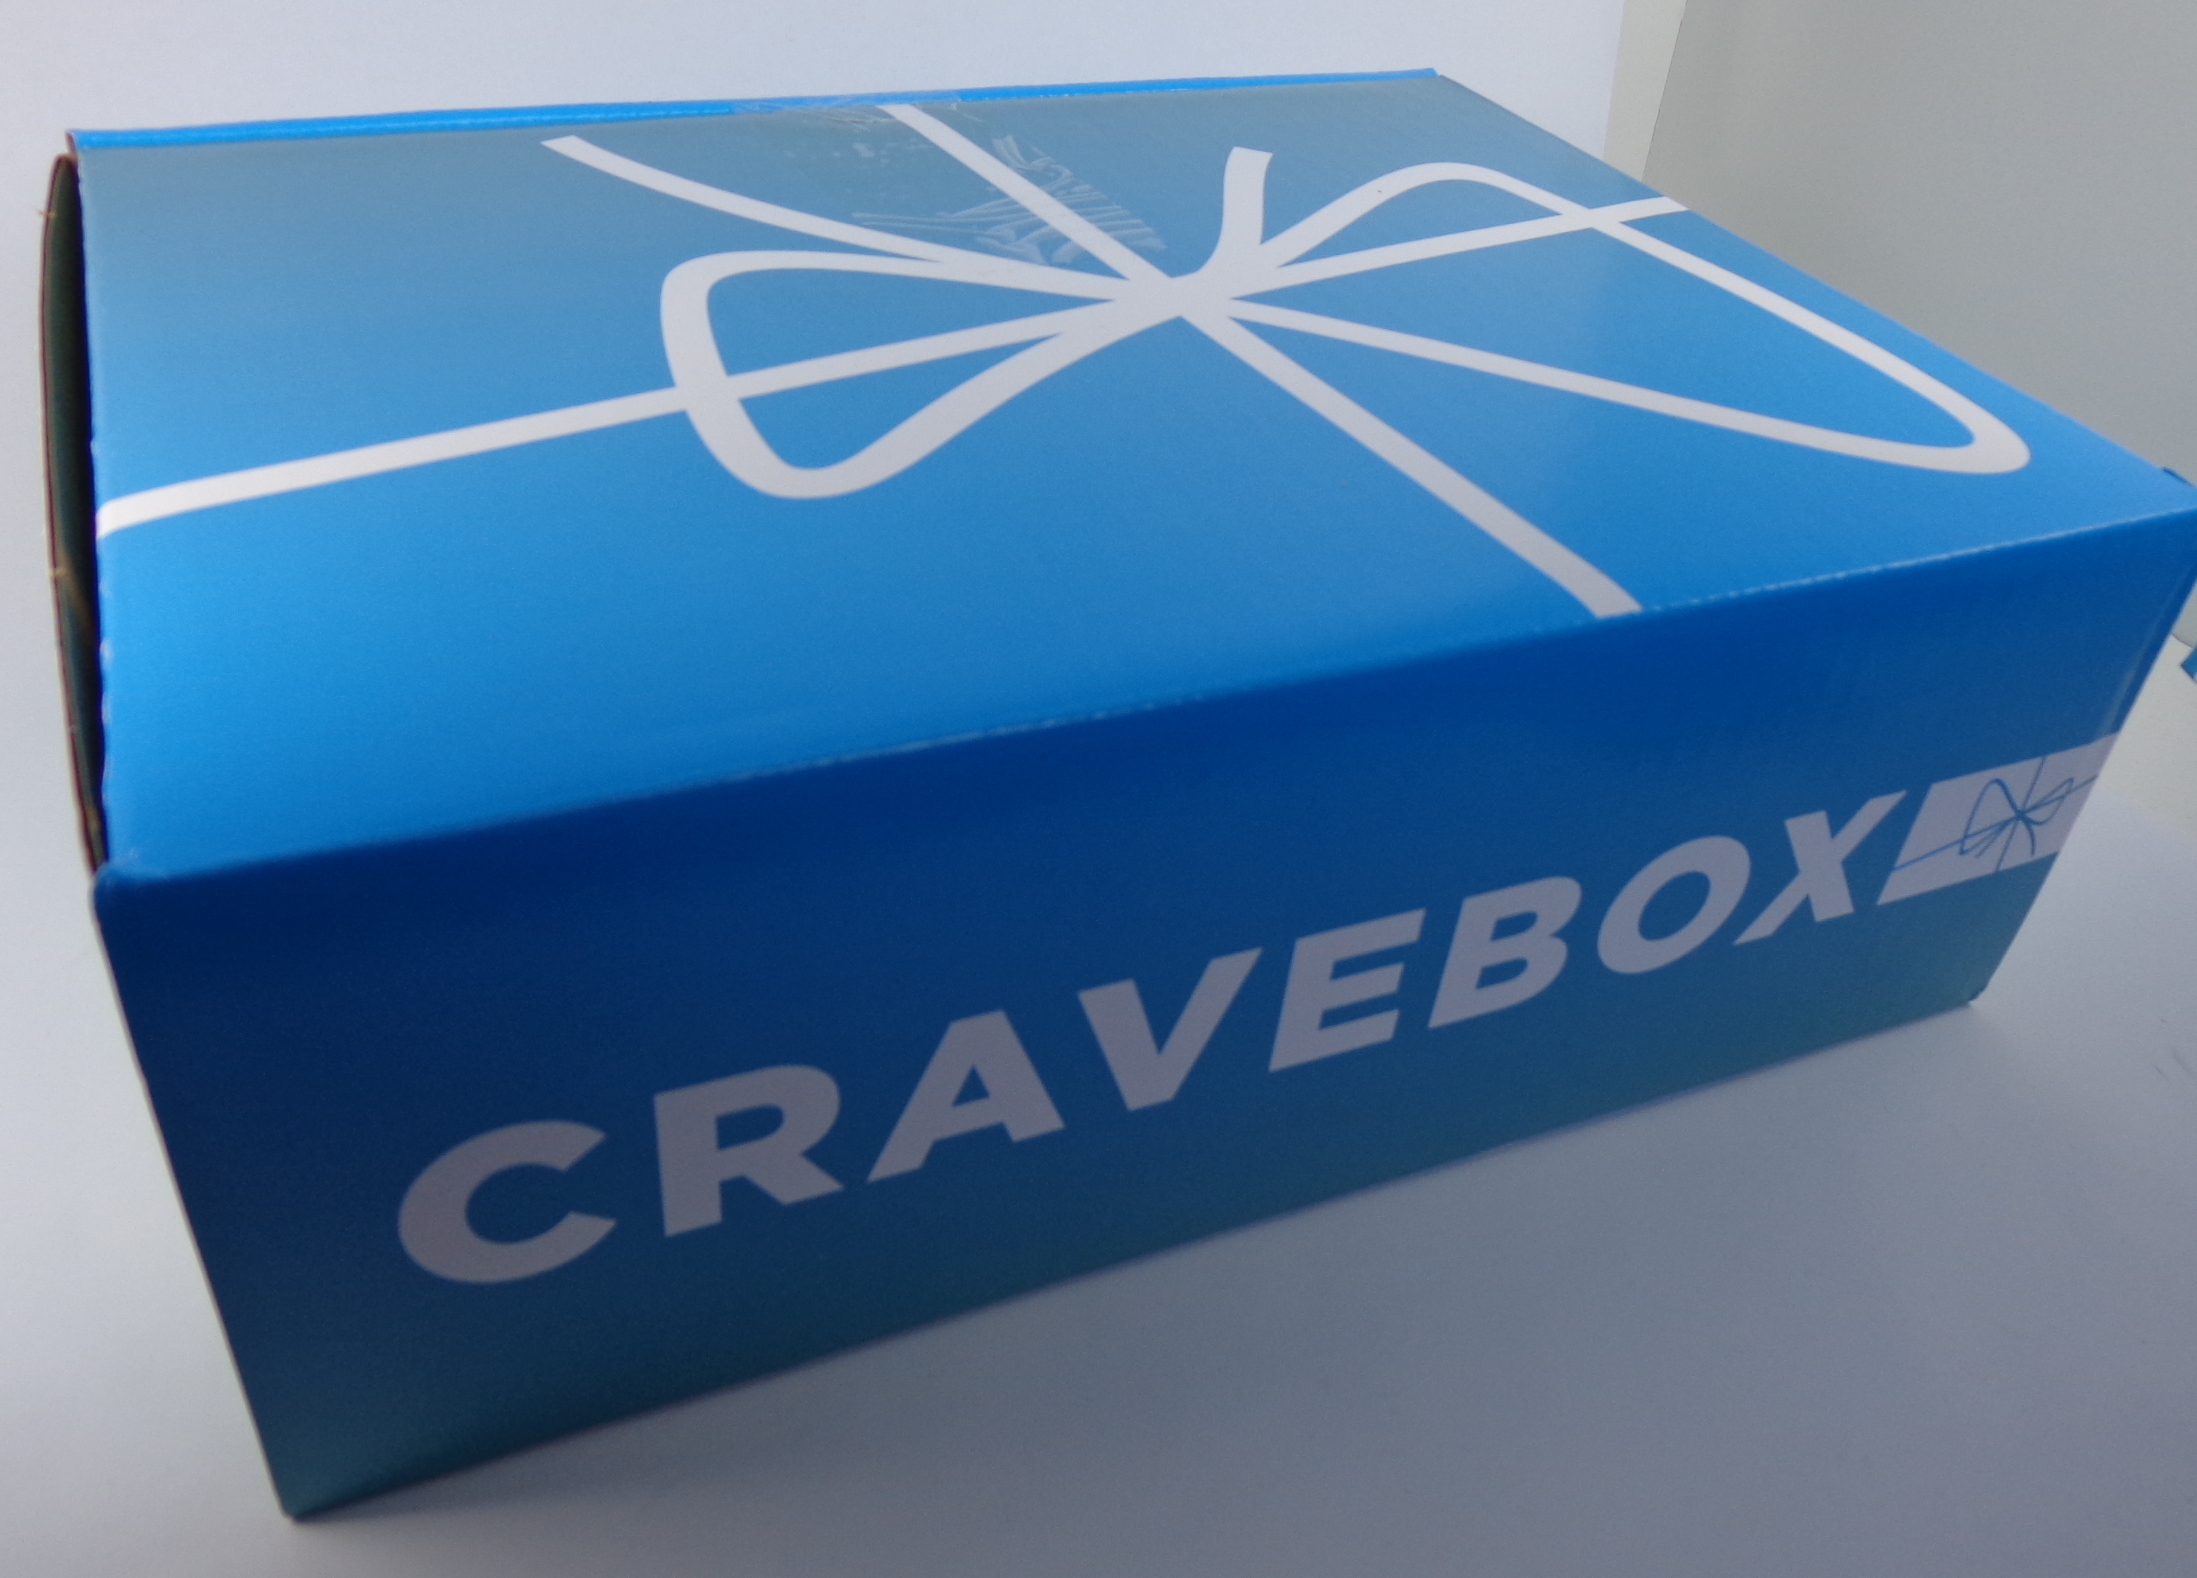 cravebox 1